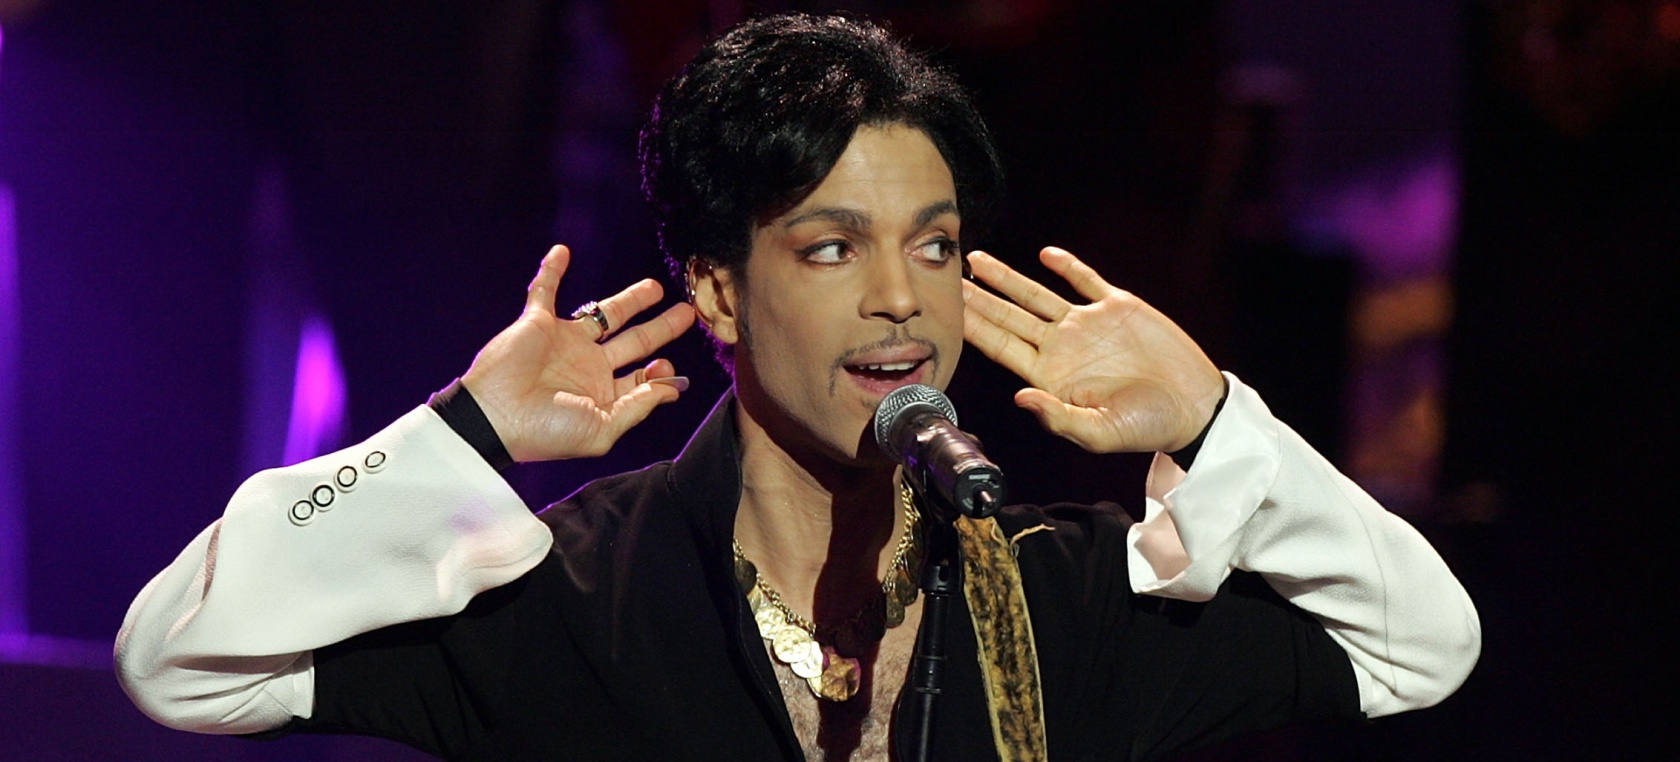 La última semana de Prince antes de su inesperada muerte accidental hace 6 años